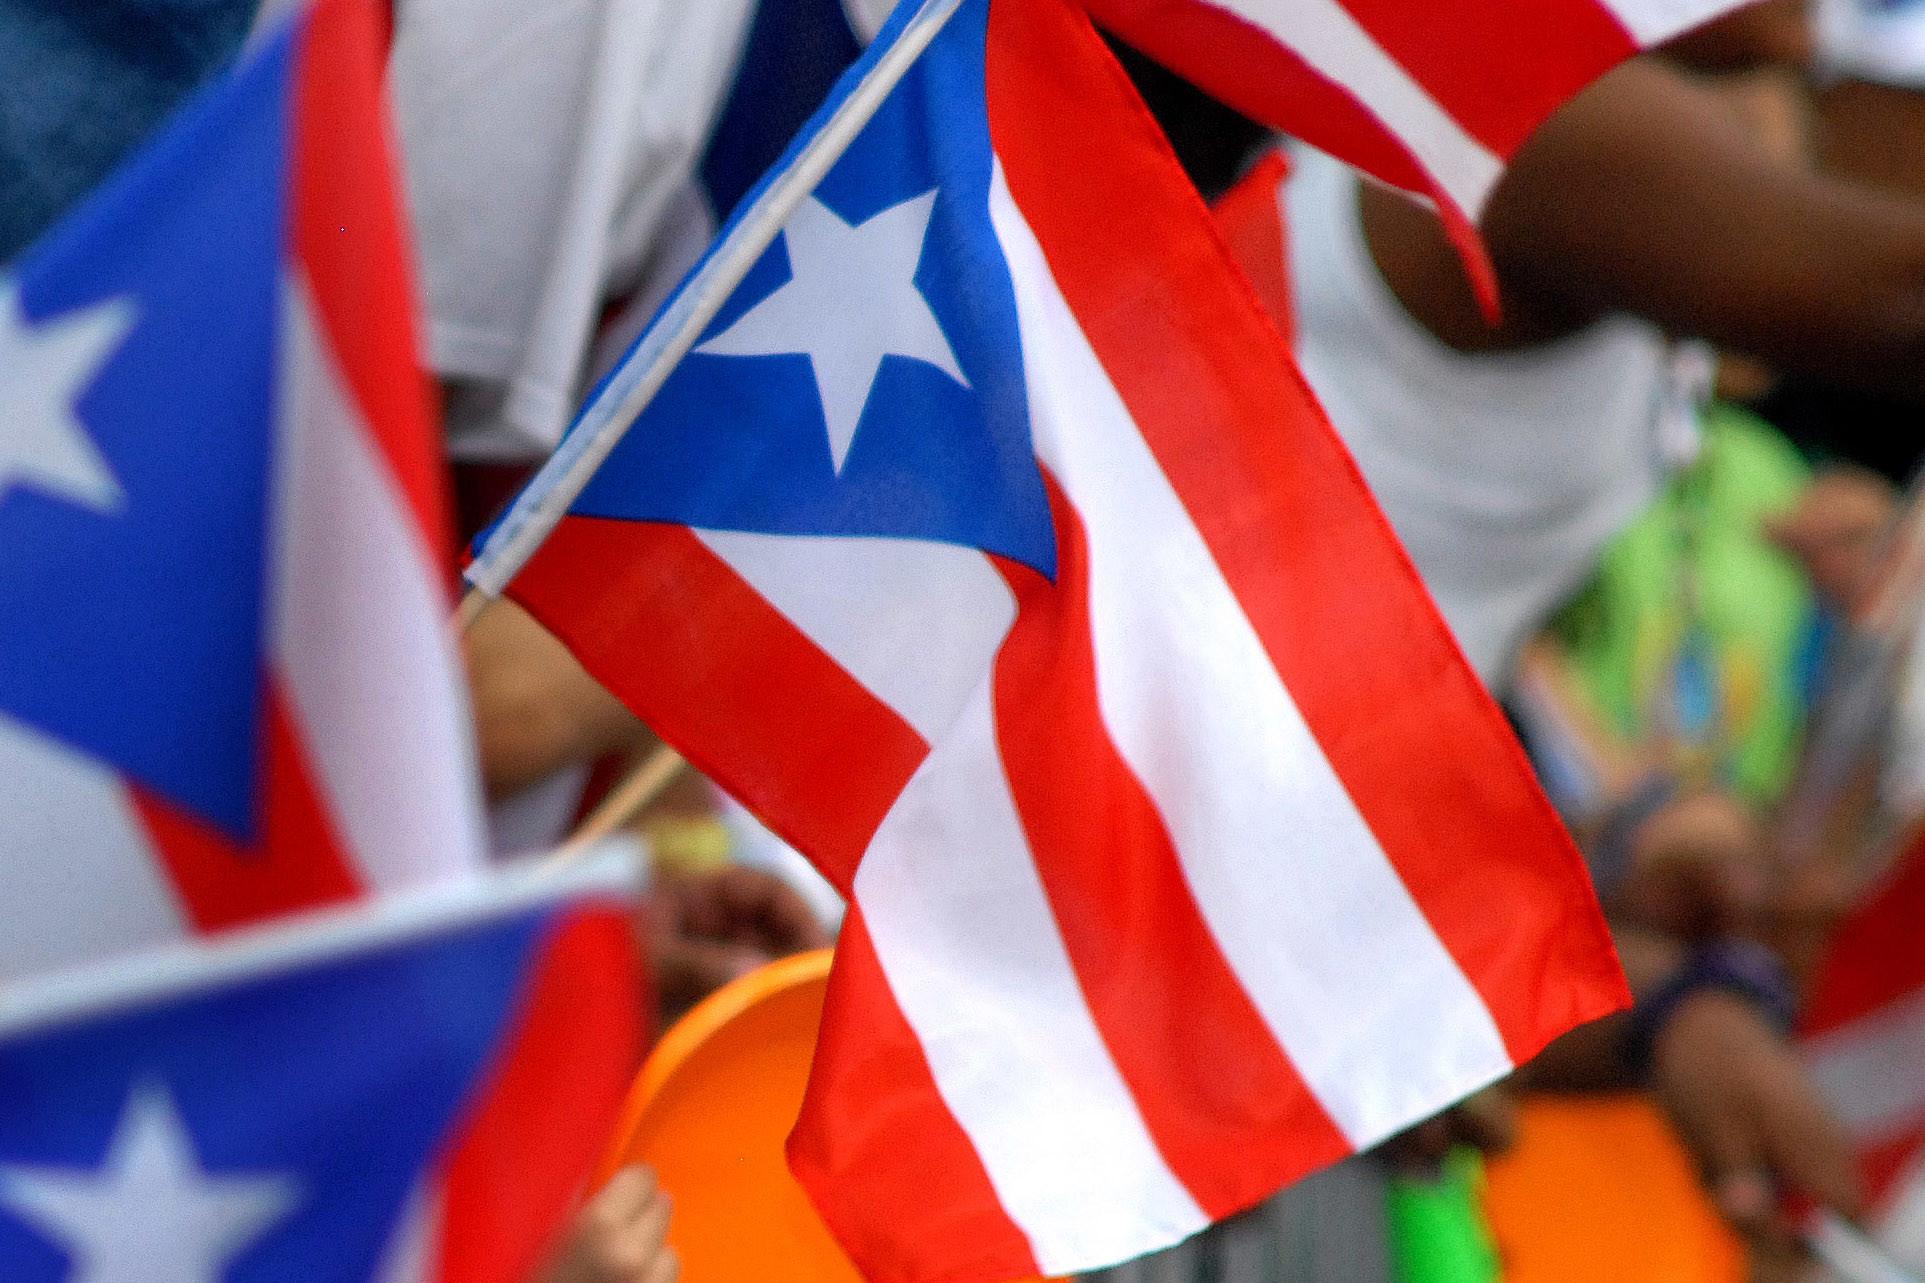 1925x1283 puerto-rican-flag-wallpaper-1925Ã1283-xiaomi-WTG200412454